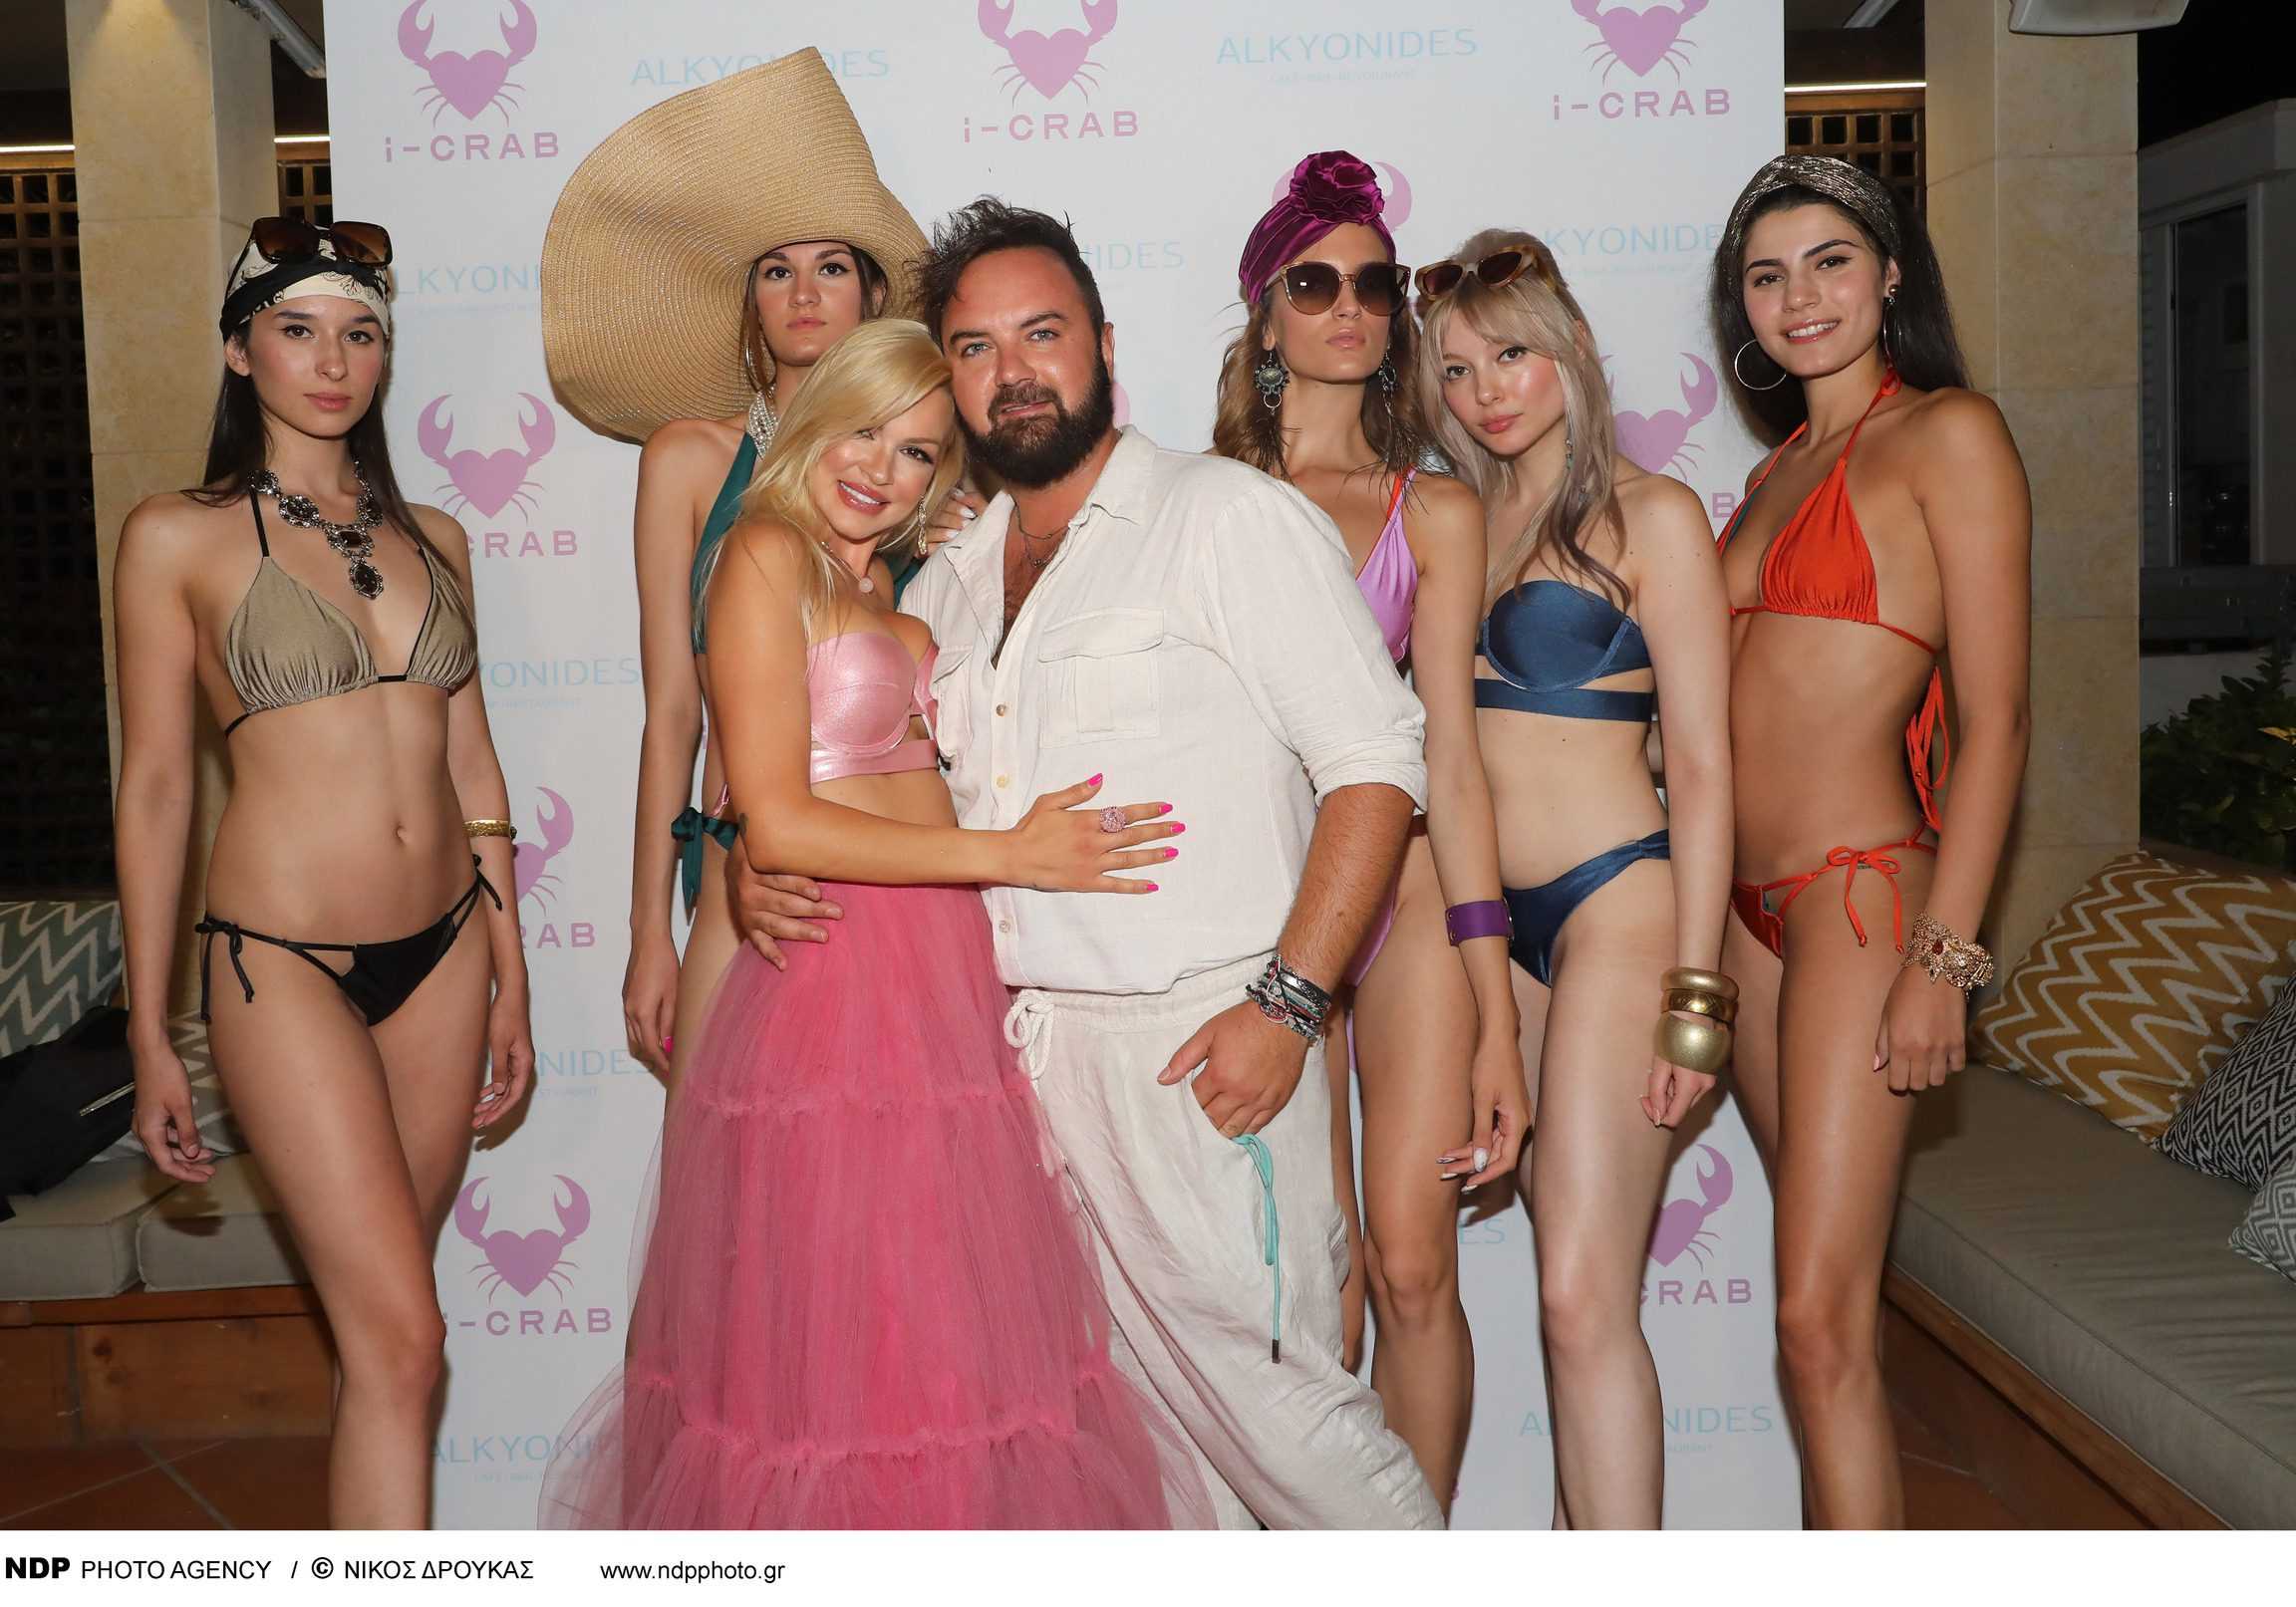 Η Βίκυ Κάβουρα ανάμεσα στα μοντέλα της Swimwear Collection “I-CRAB” με τον στυλίστα του brand Παντελιό Μιχαήλ